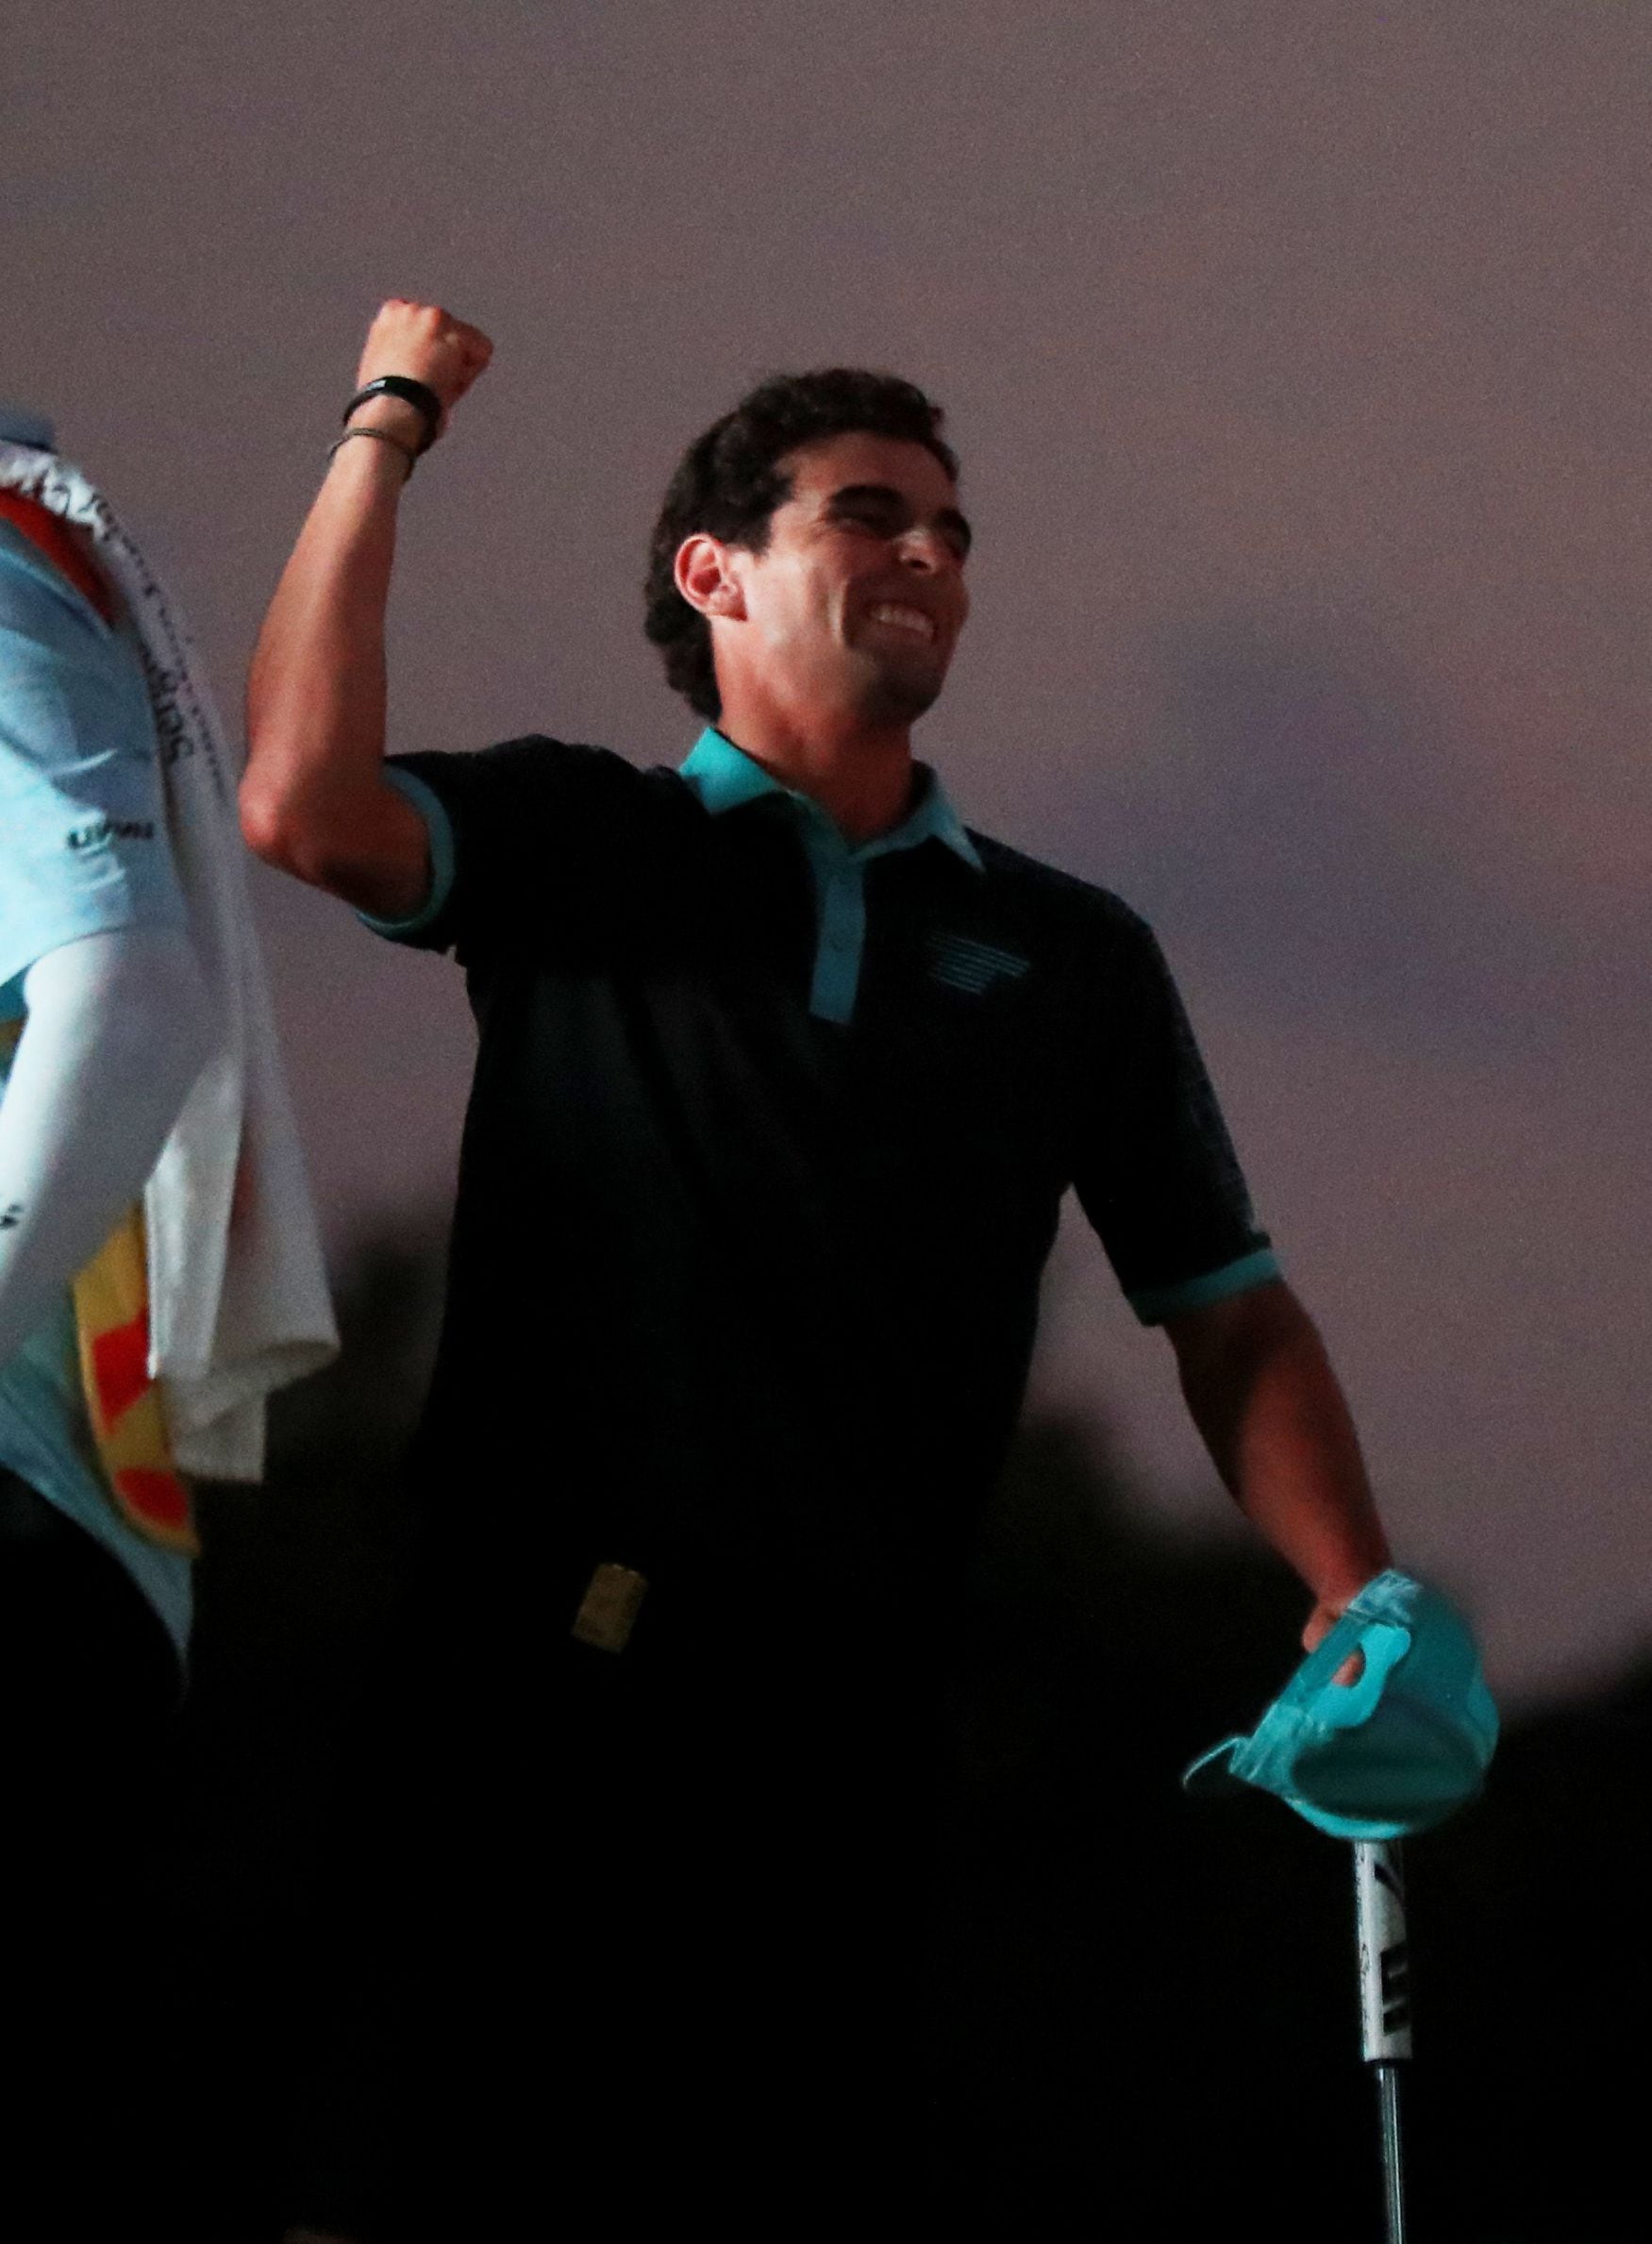 Niemann dejó atrás su mala racha y sumó su primer título individual en LIV Golf. Foto: REUTERS/Raquel Cunha